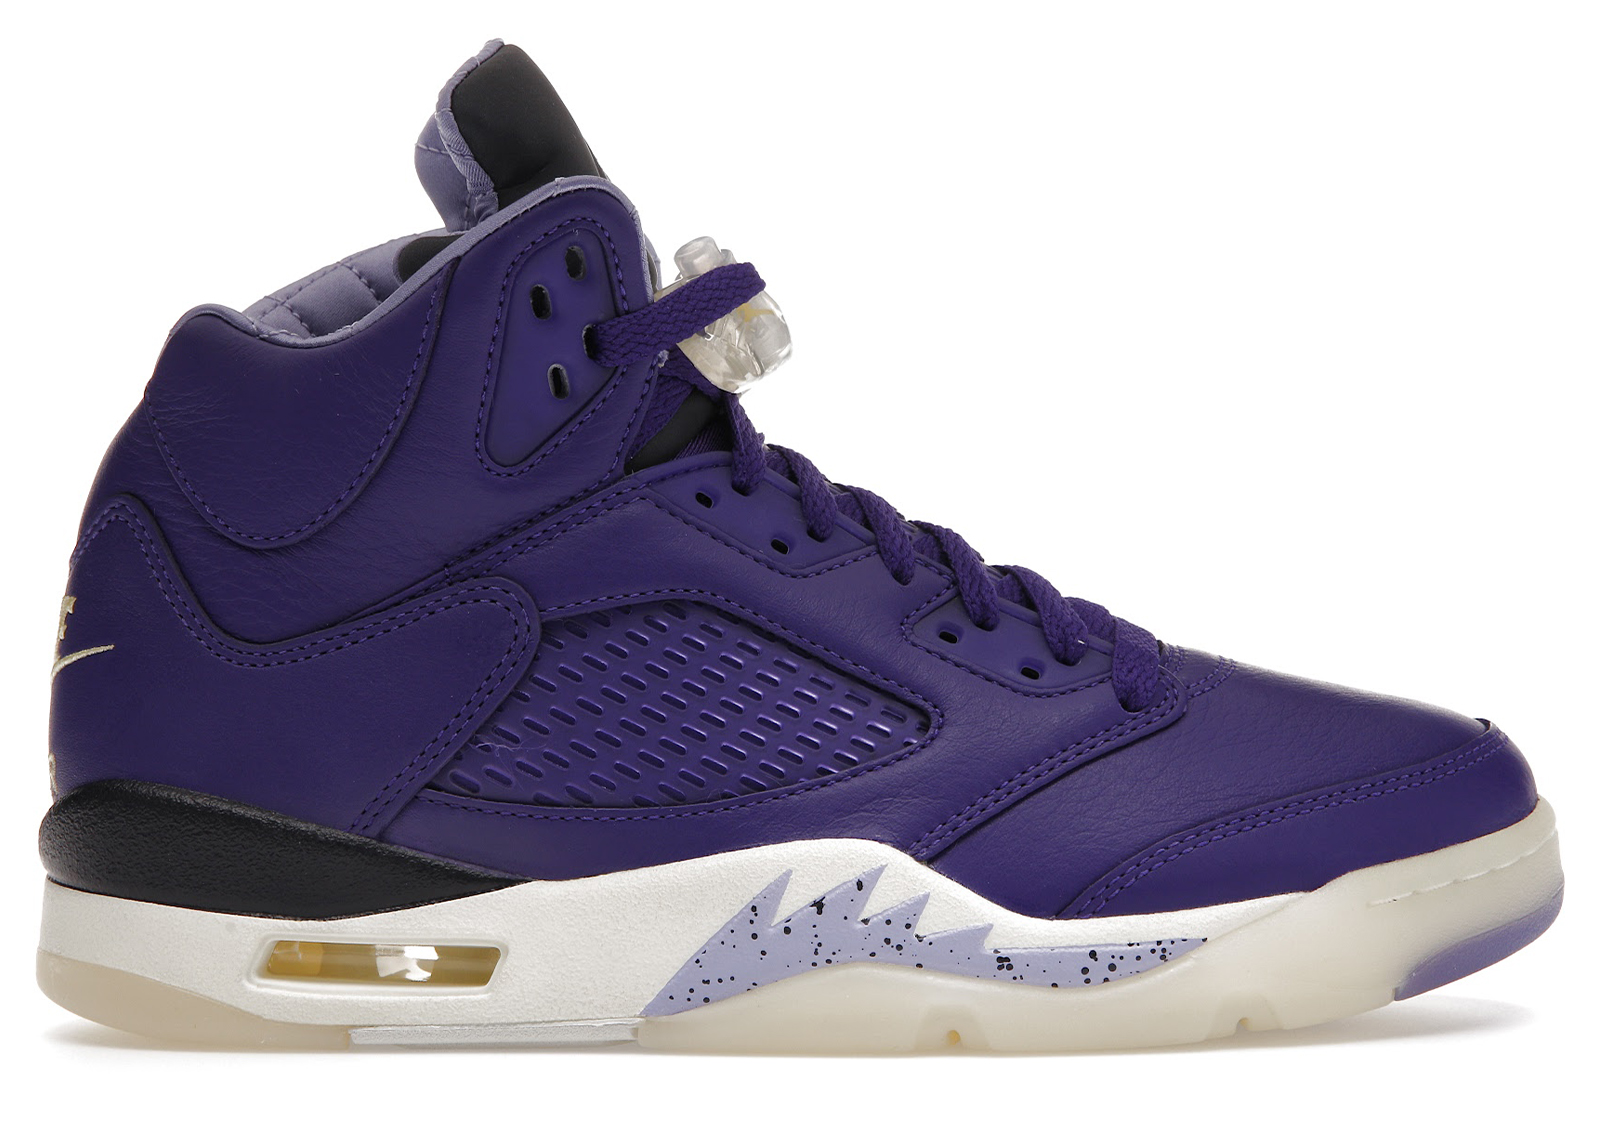 DJ Khaled x Nike Air Jordan 5